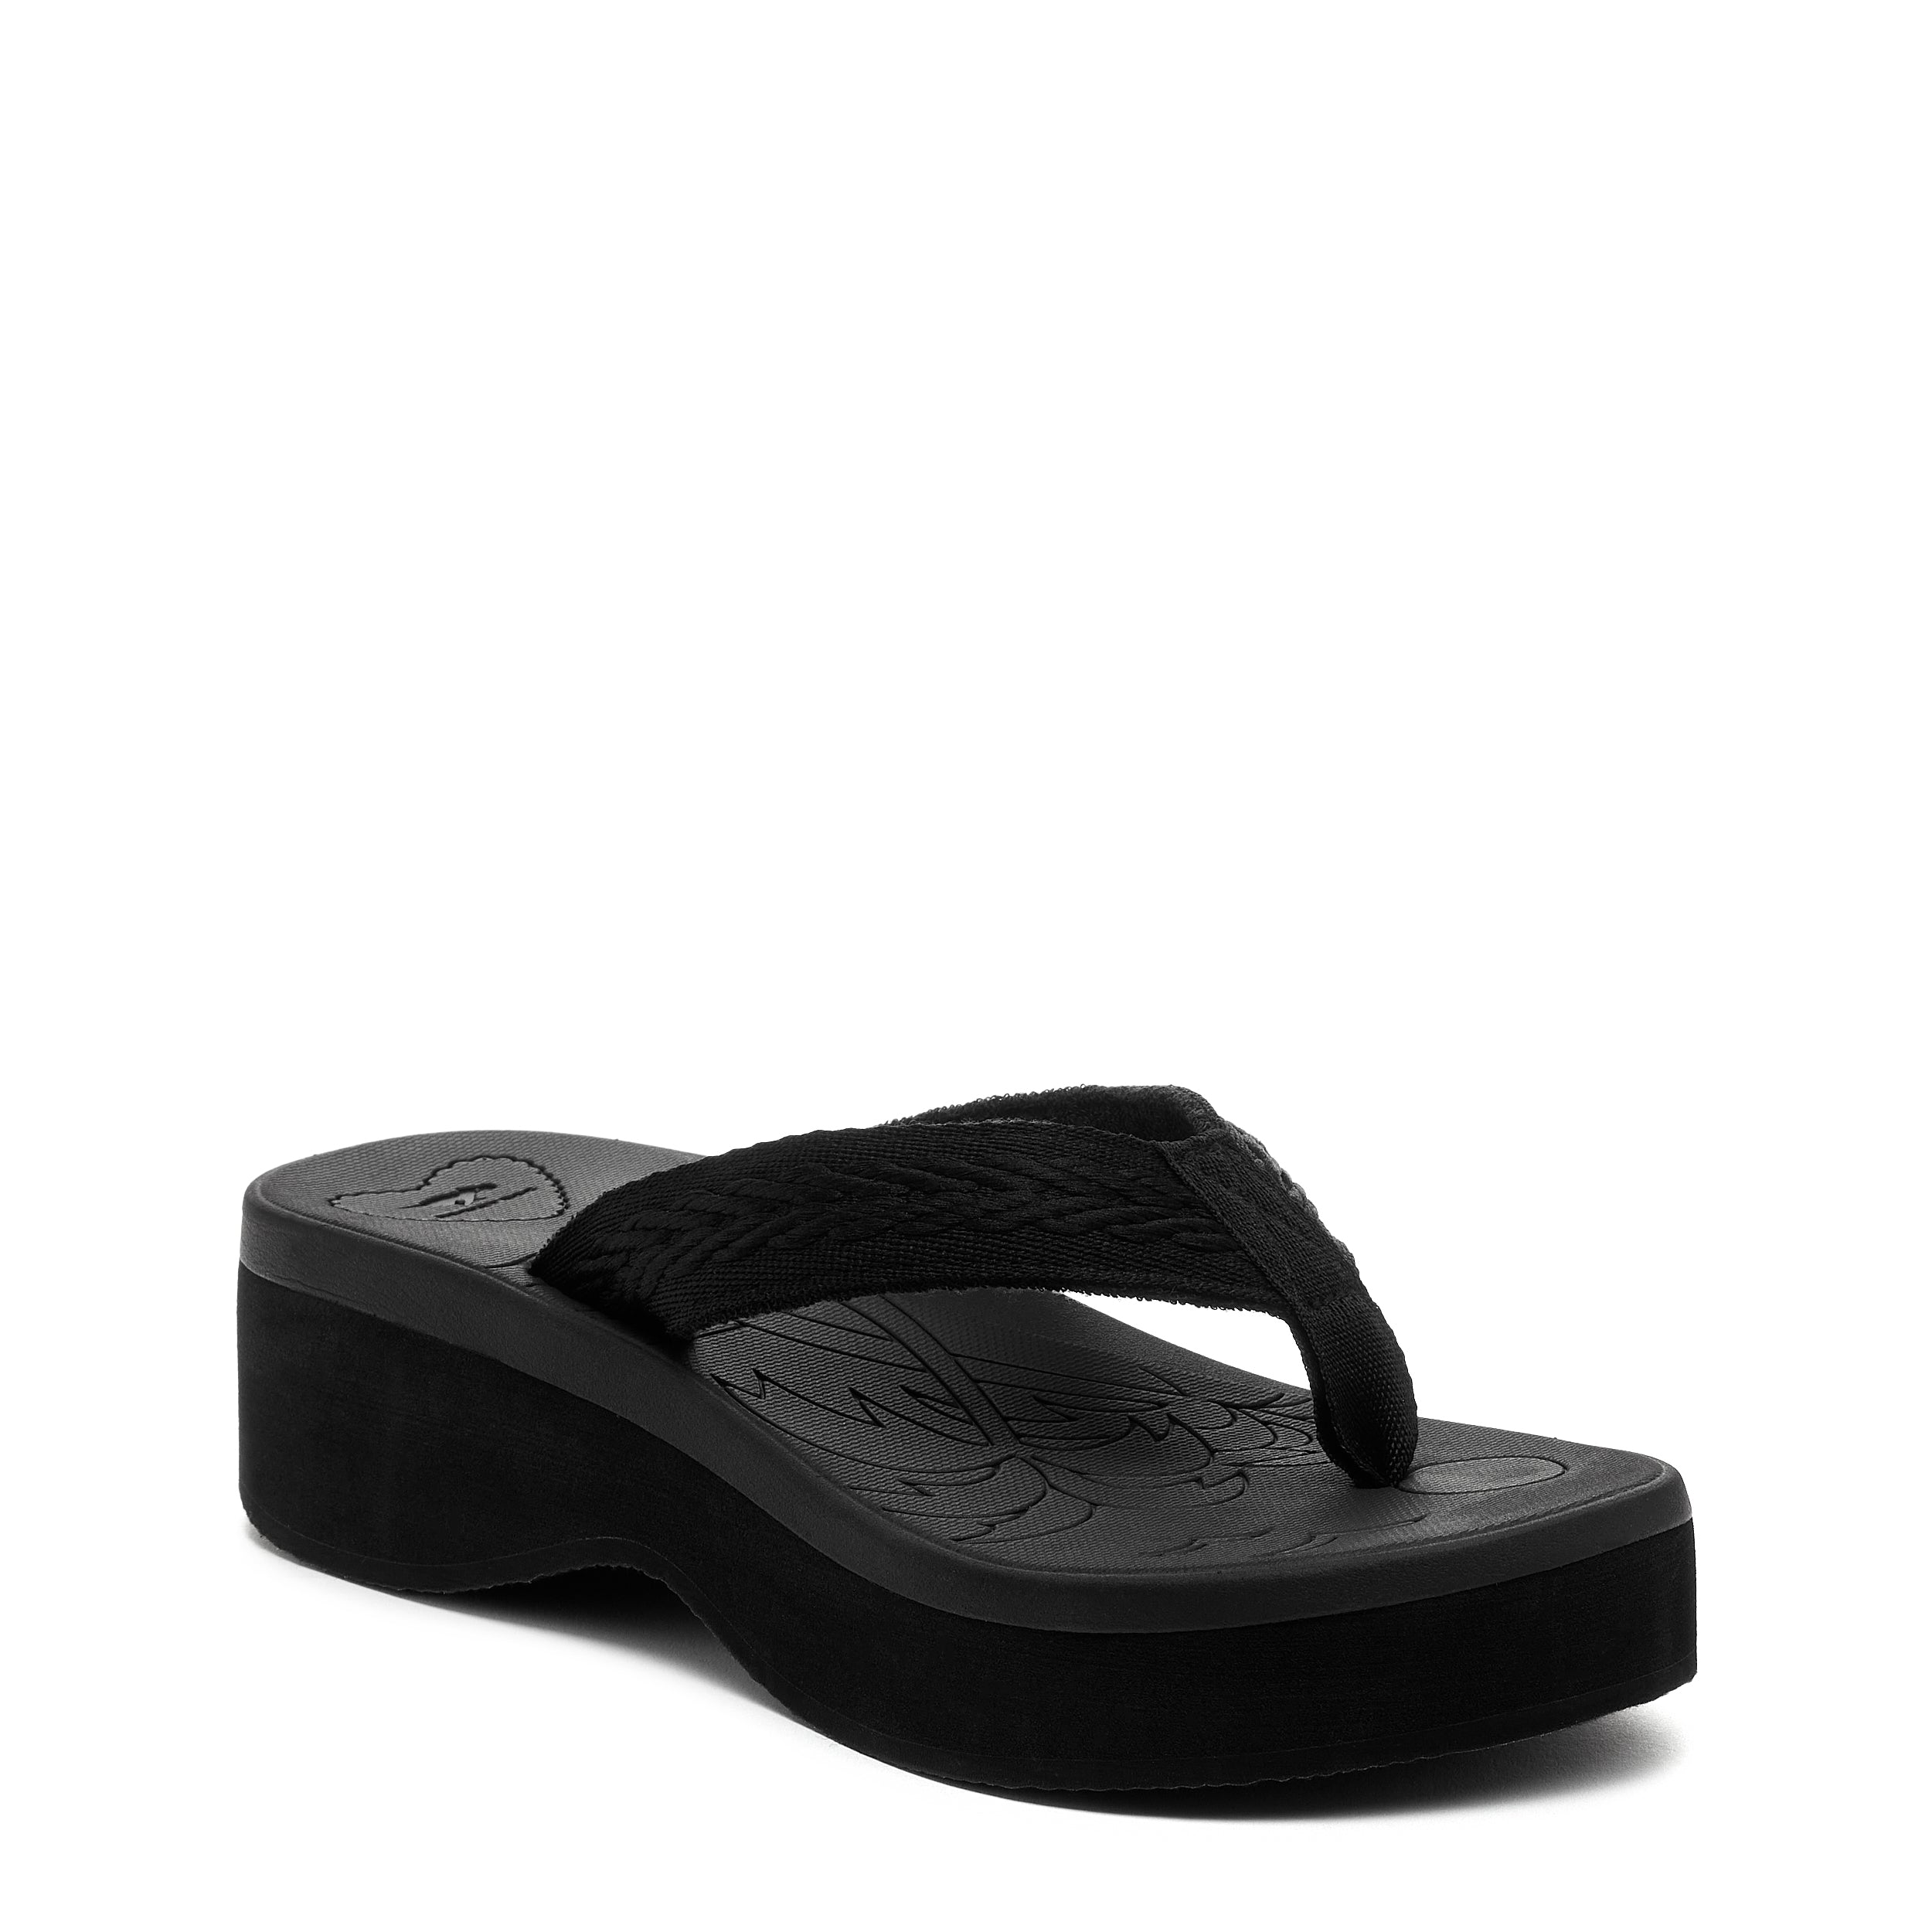 Buy Slippers for women PUL 105 - Slippers for Women | Relaxo